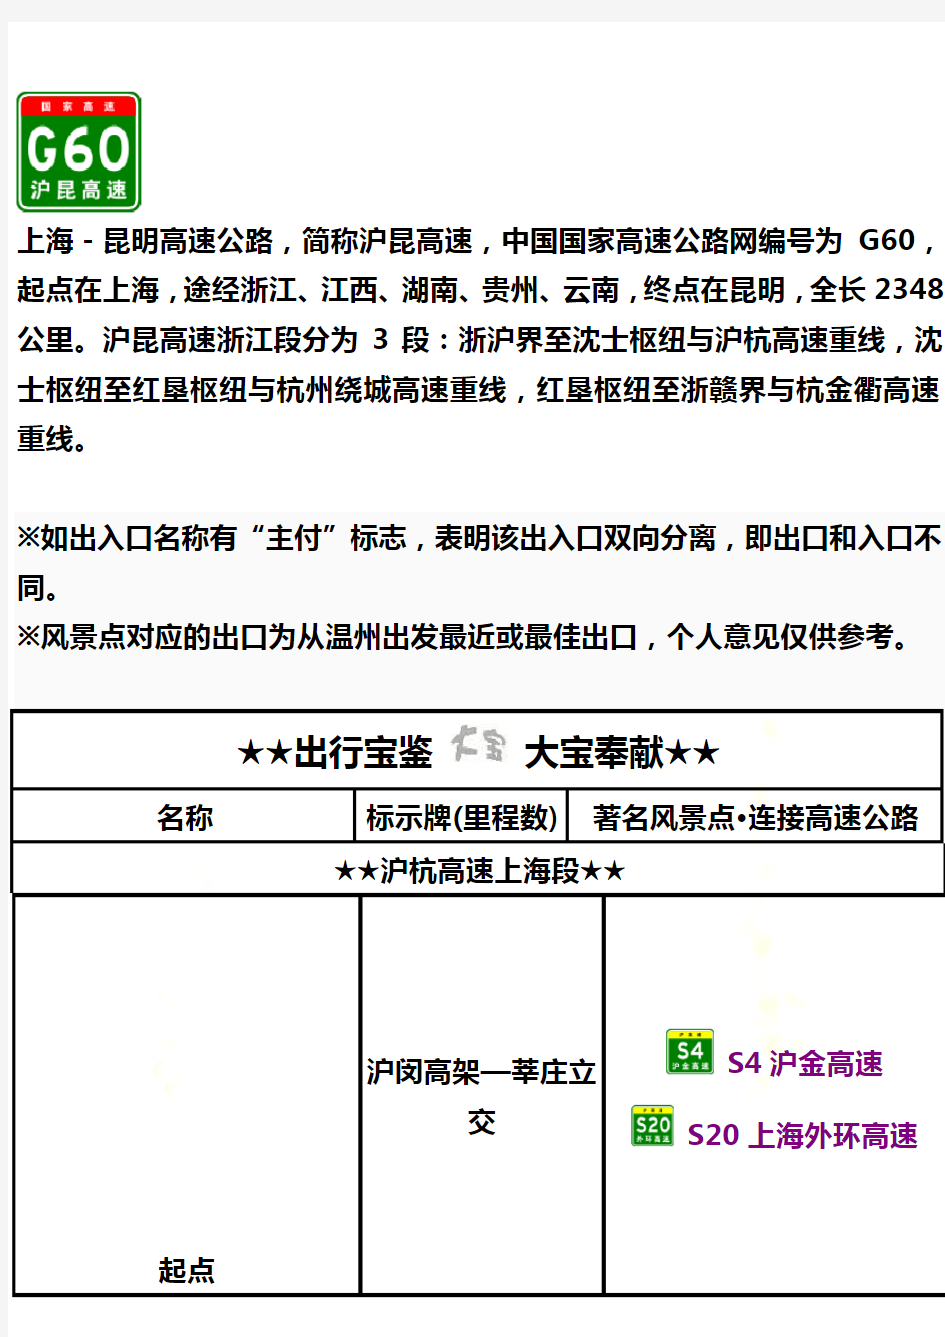 G60沪昆高速(浙江段)出入口、服务区、里程数及风景点